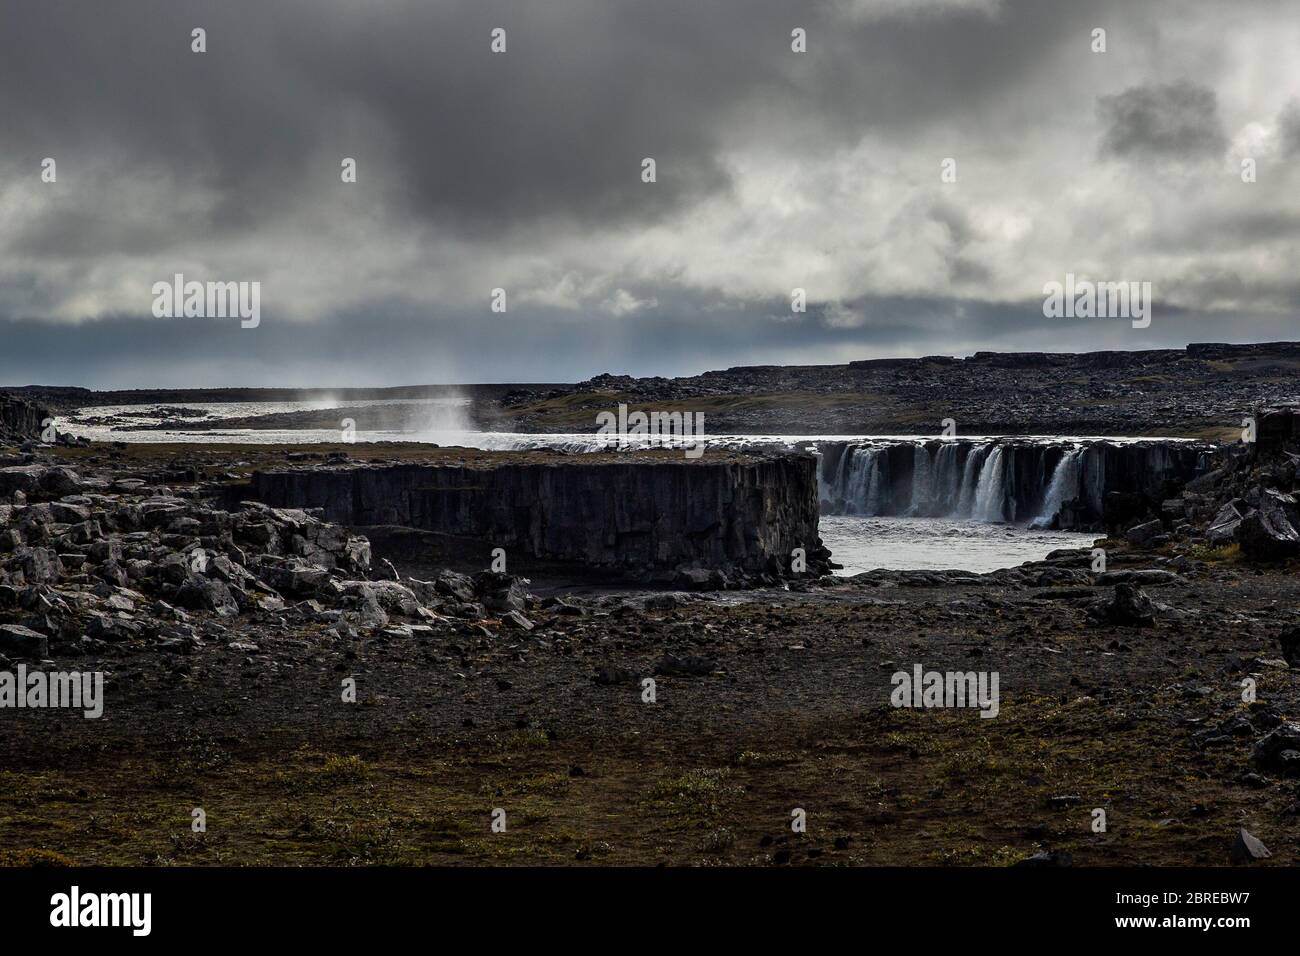 Gesamtansicht von Selfoss, Wasserfälle im Norden Islands. Der Himmel ist bewölkt. Wir können vom Nebel unterscheiden, der von der Oberfläche aufsteigt. Stockfoto